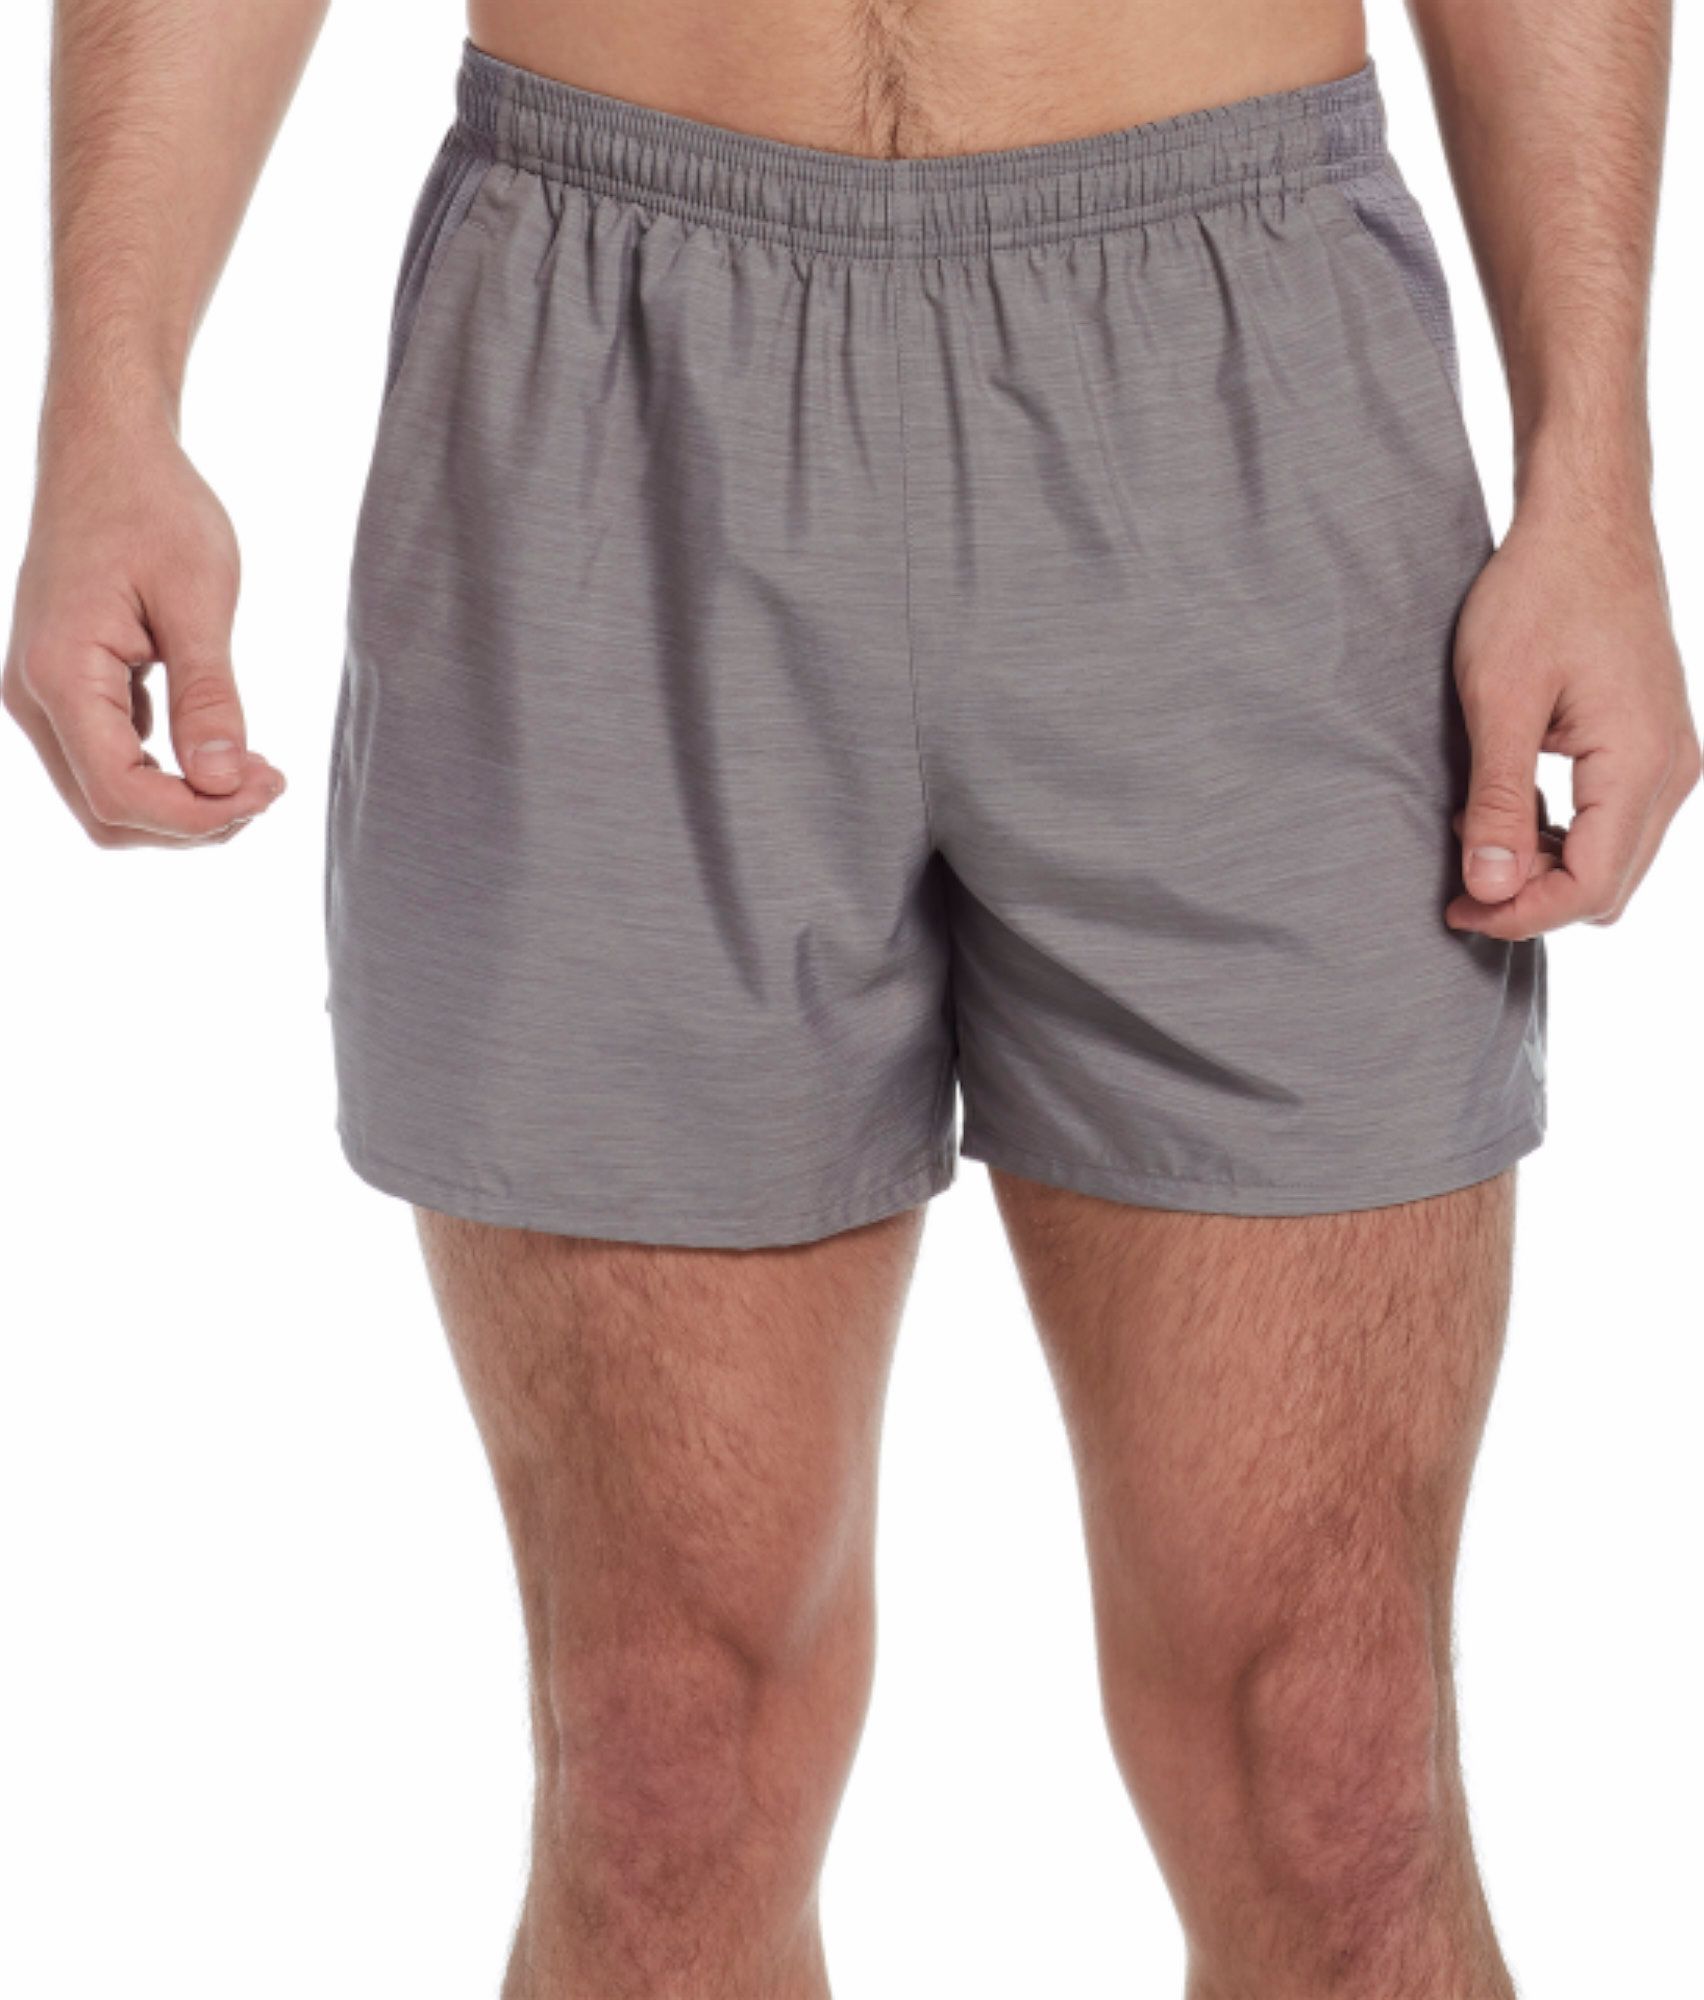 5.5 nike shorts